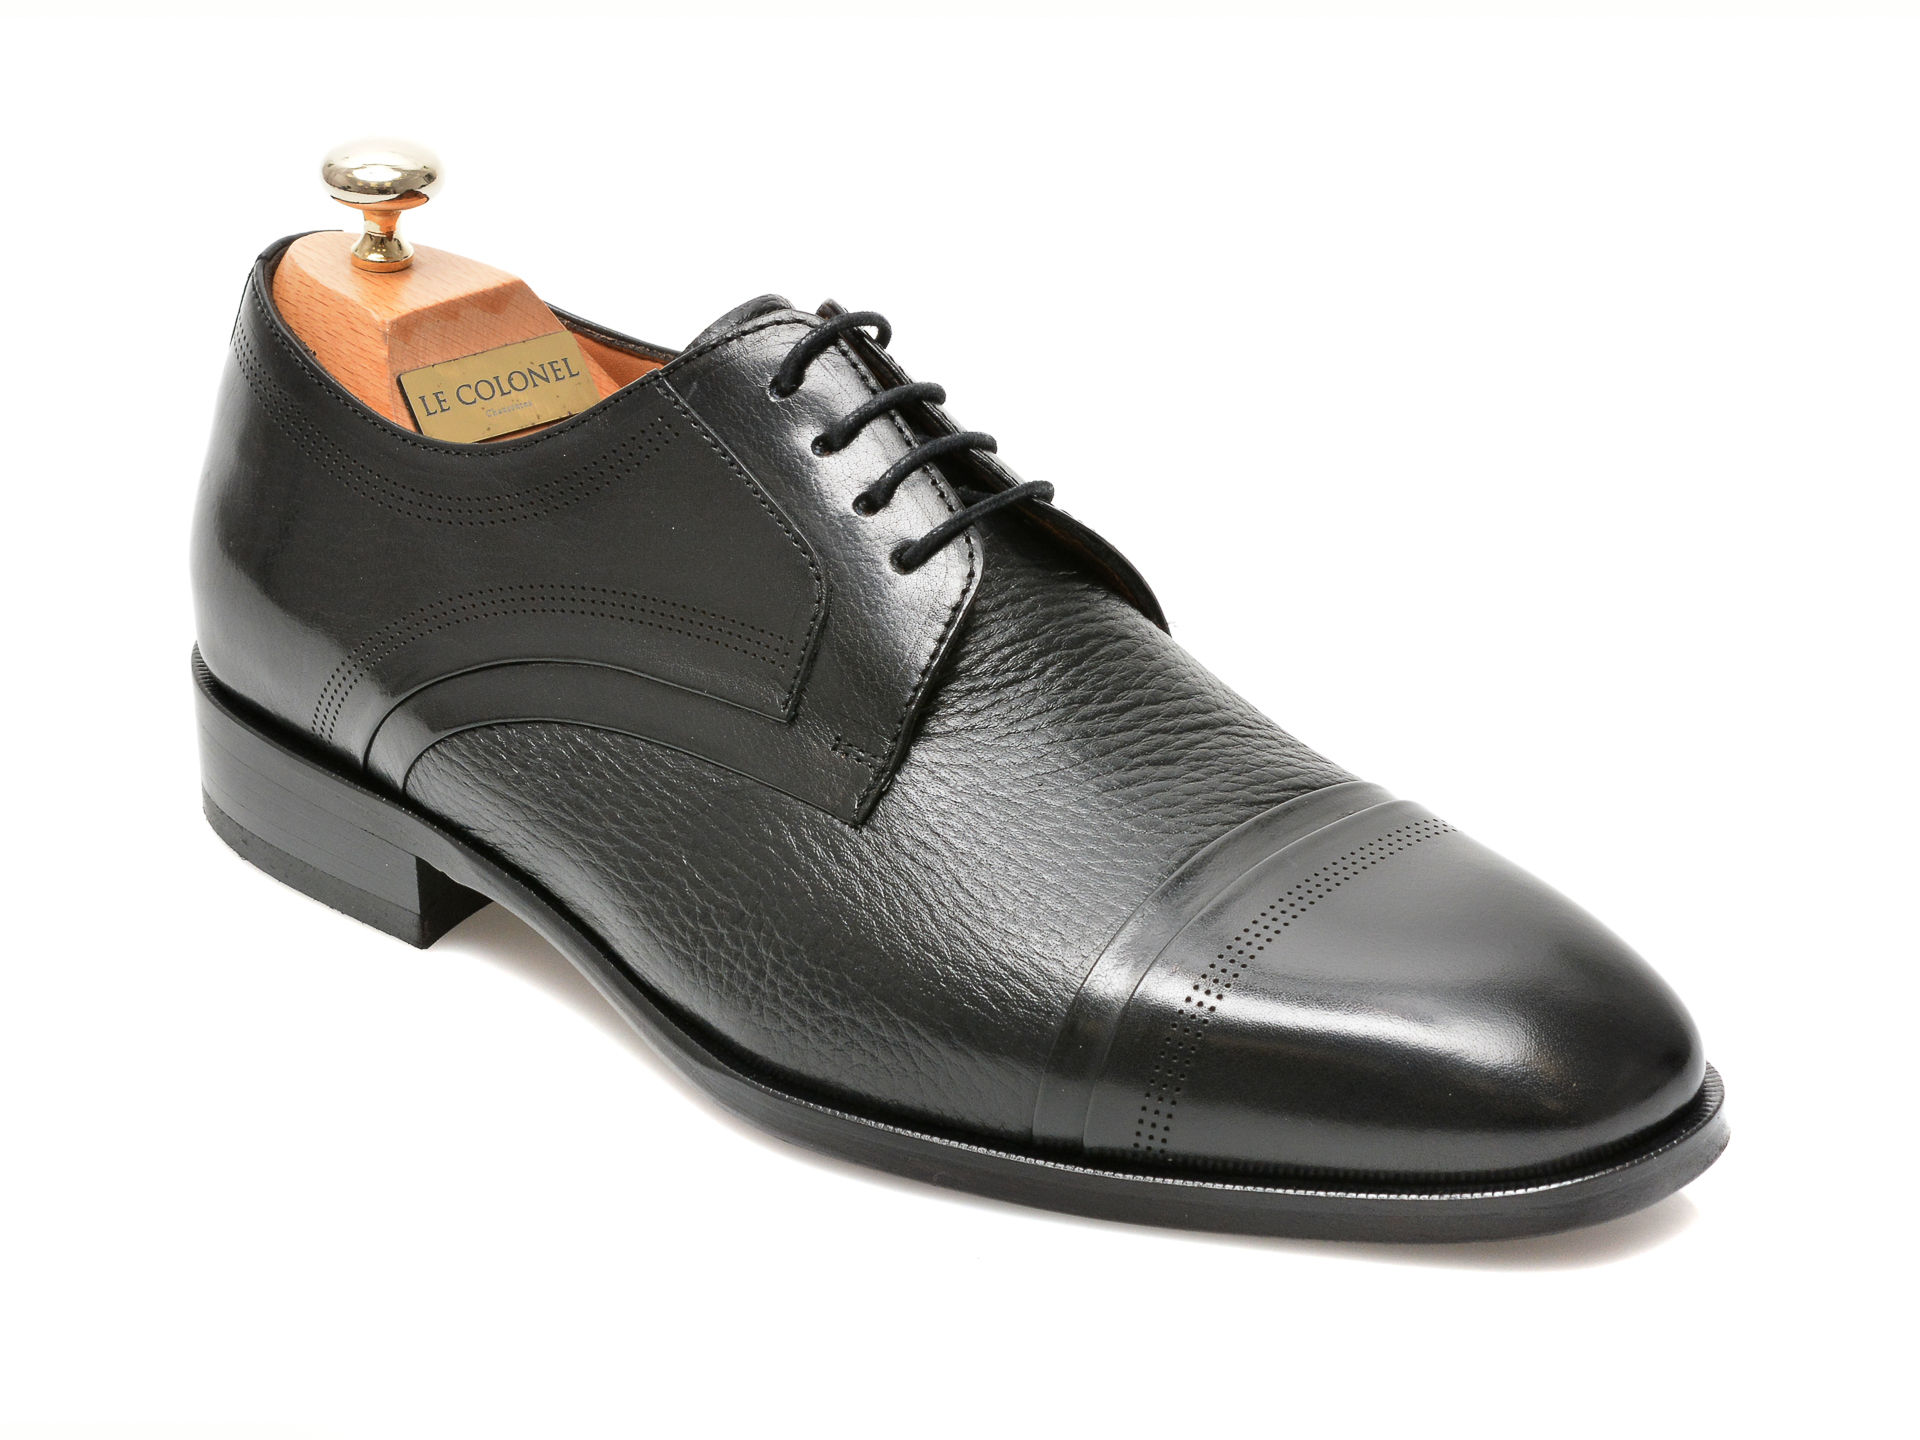 Pantofi LE COLONEL negri, 48470, din piele naturala Le Colonel